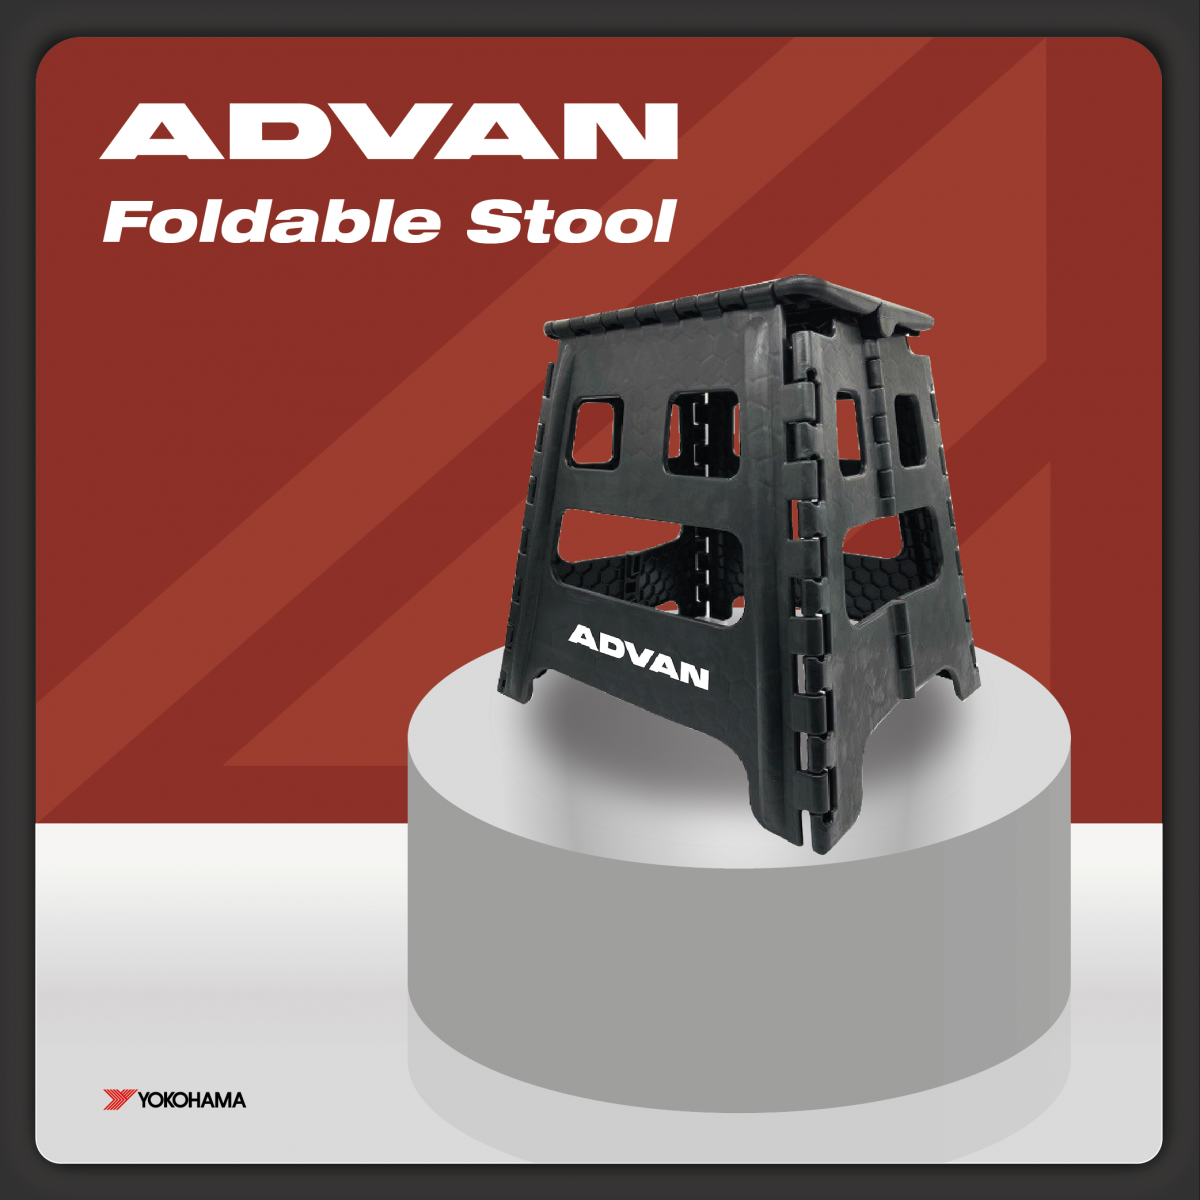 ADVAN Foldable stool